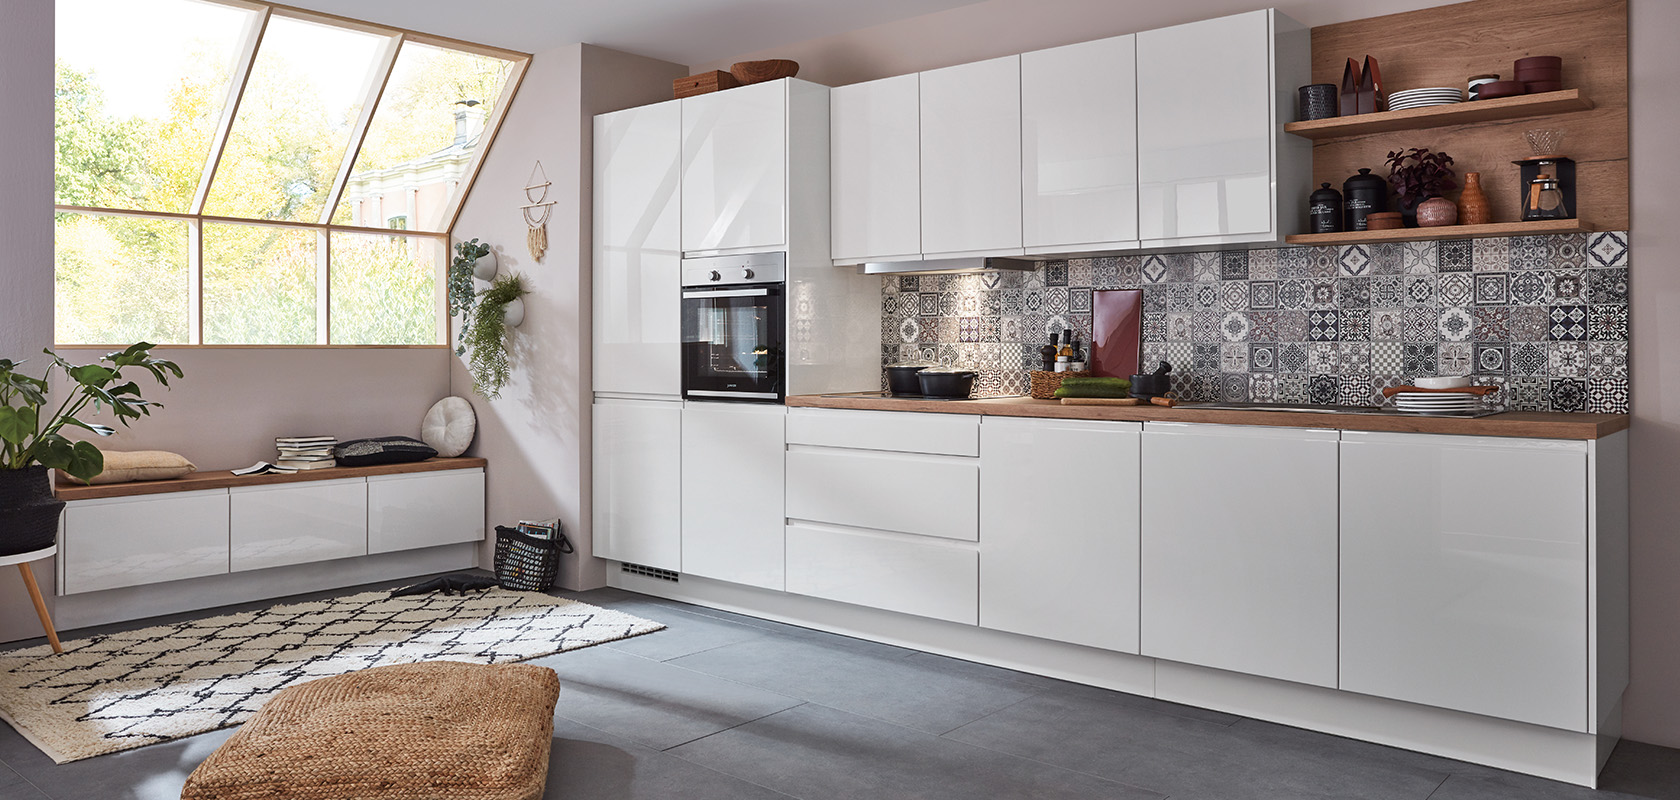 Interior de cocina moderna con gabinetes blancos limpios, azulejos de salpicadero geométricos y detalles de madera, transmitiendo un espacio acogedor pero elegante para cocinar y vivir.